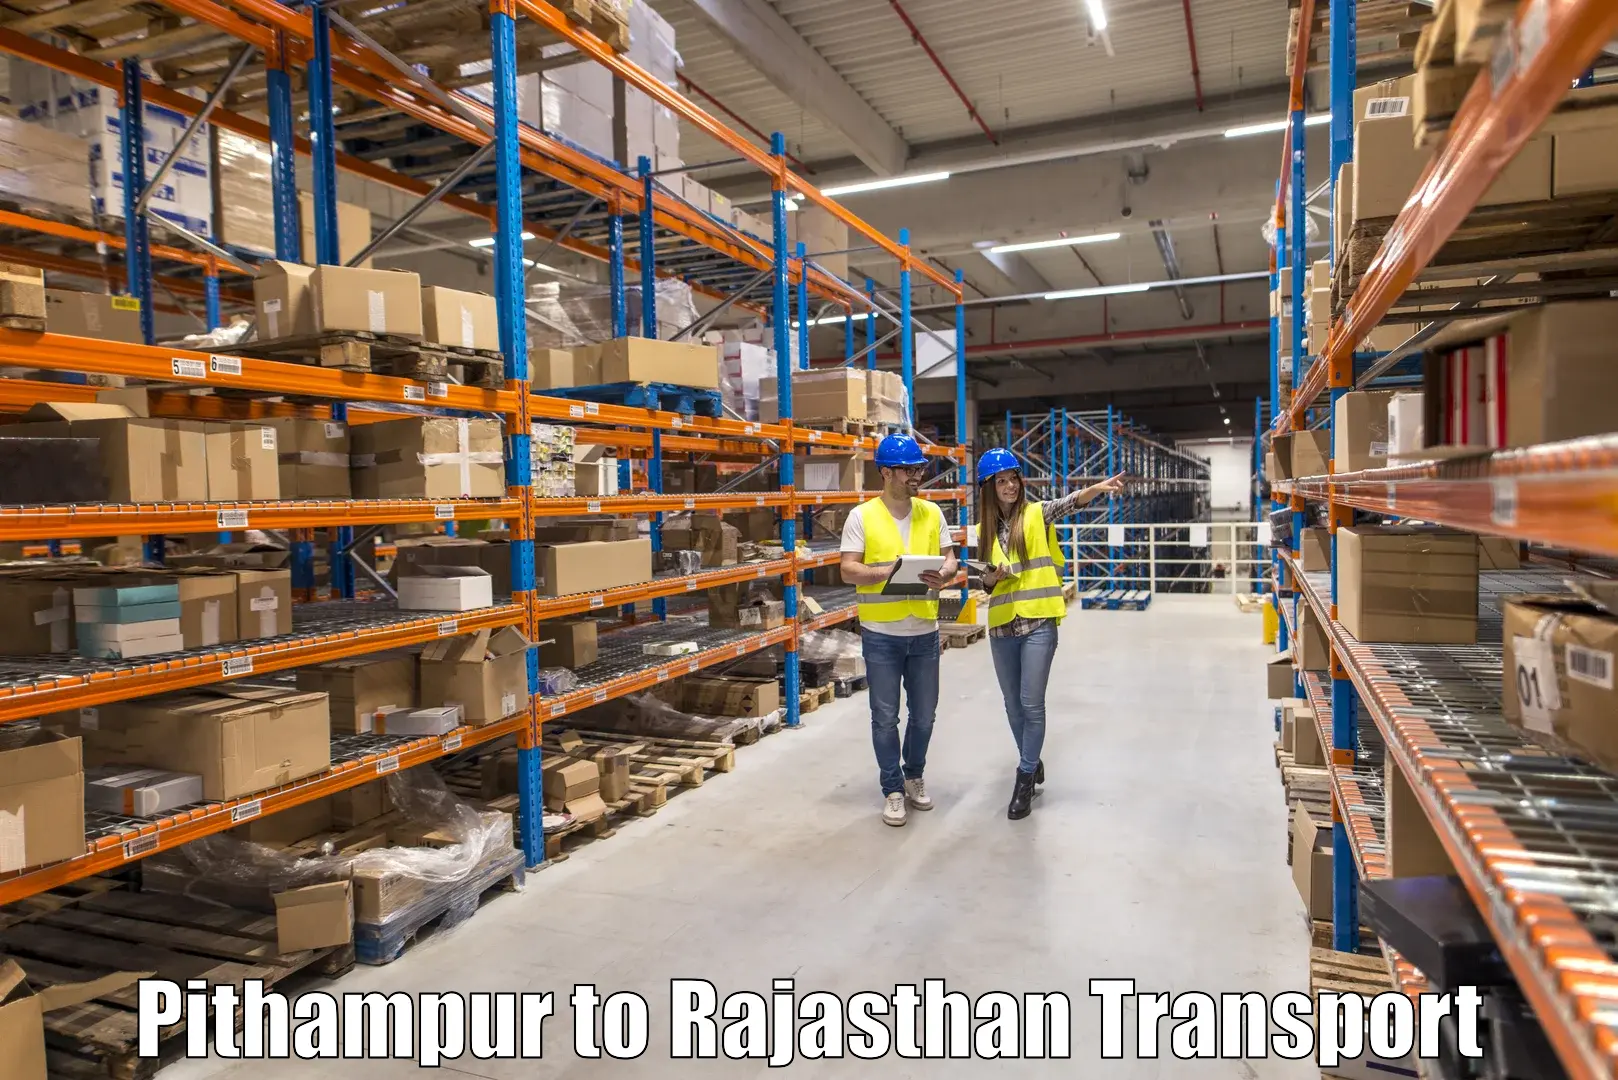 Transport in sharing Pithampur to Yathalakunta